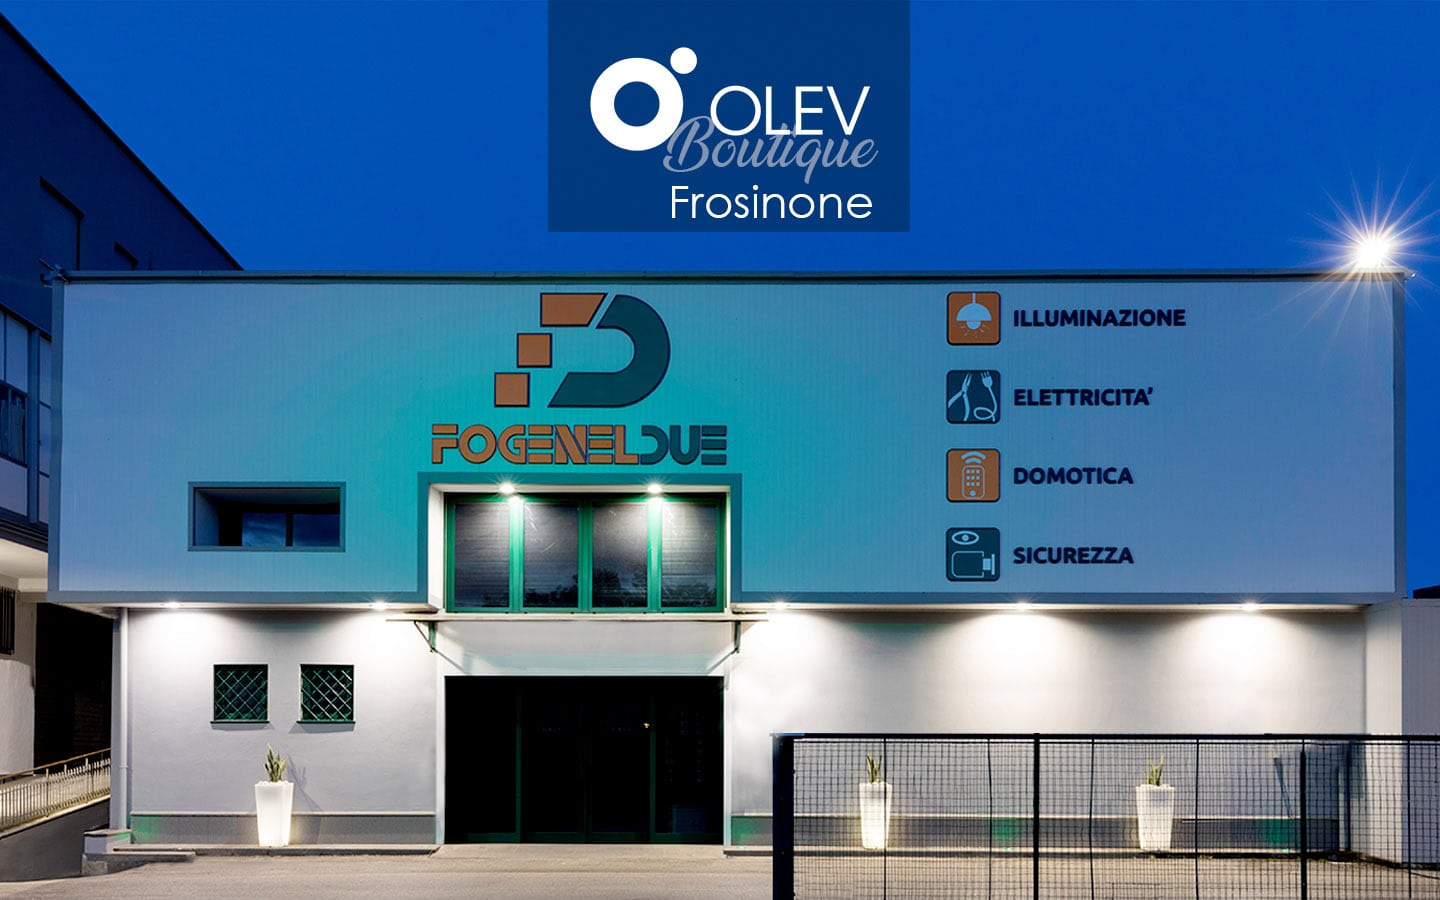 OLEV Boutique - Frosinone